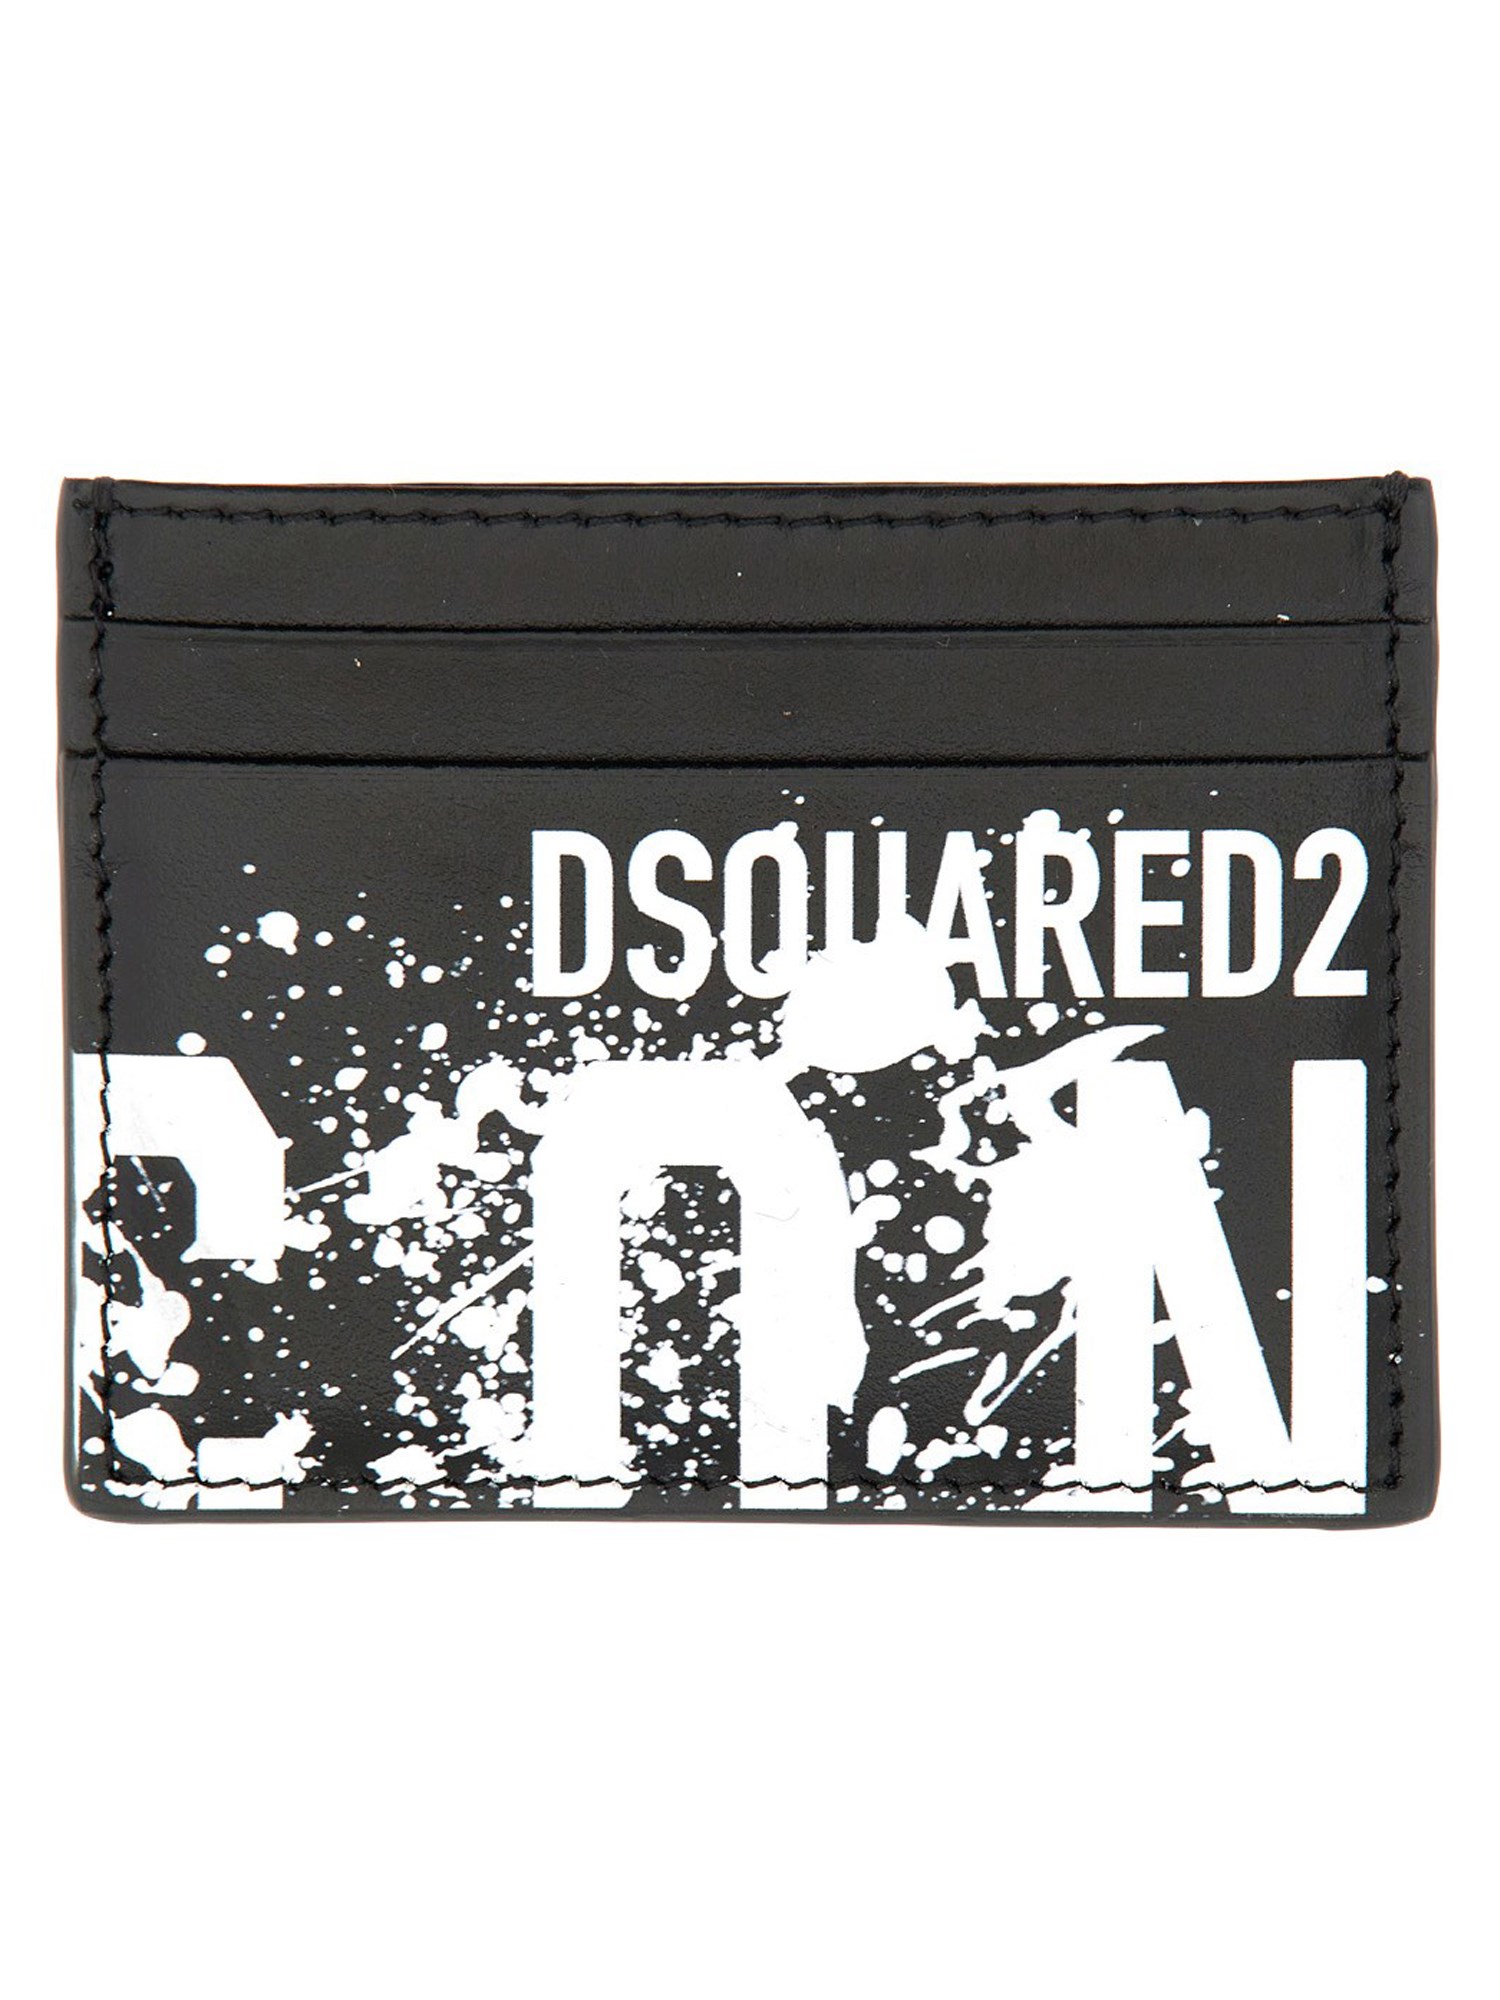 dsquared card holder 